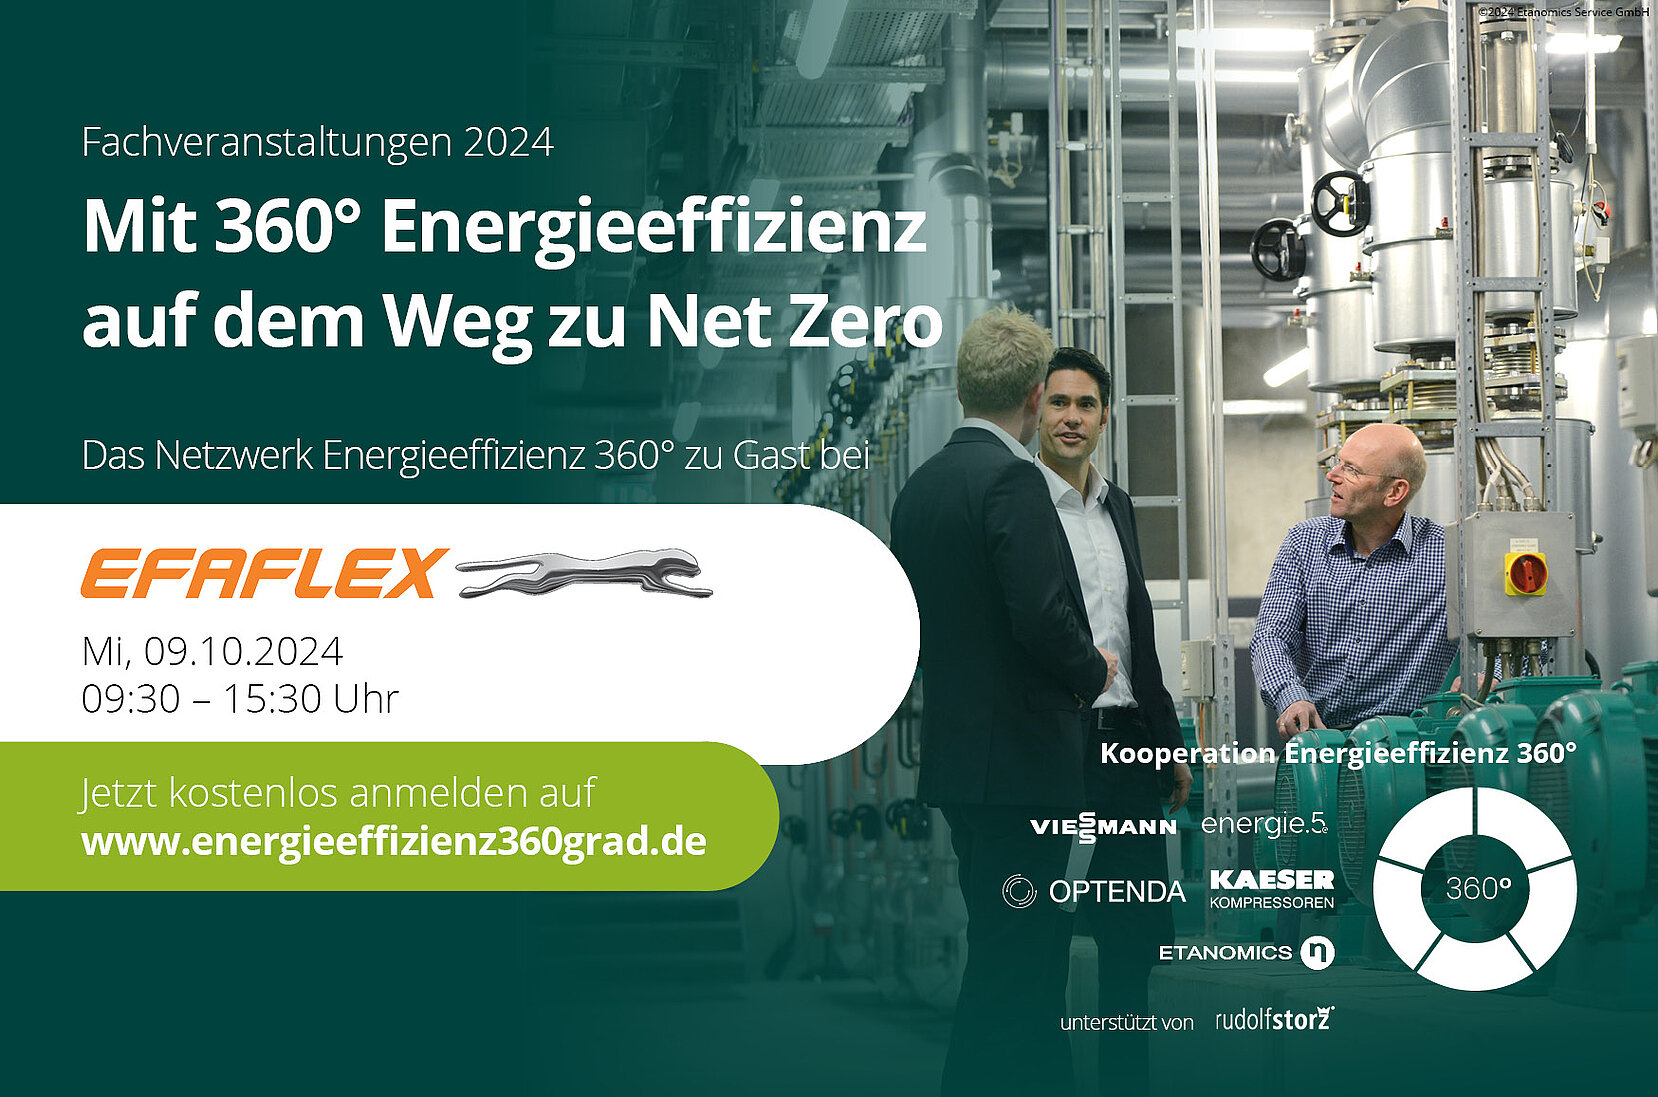 Energieeffizienz Fachveranstaltung von Netzwerk Energieeffizienz 360° am 09.10.2024 bei EFAFLEX